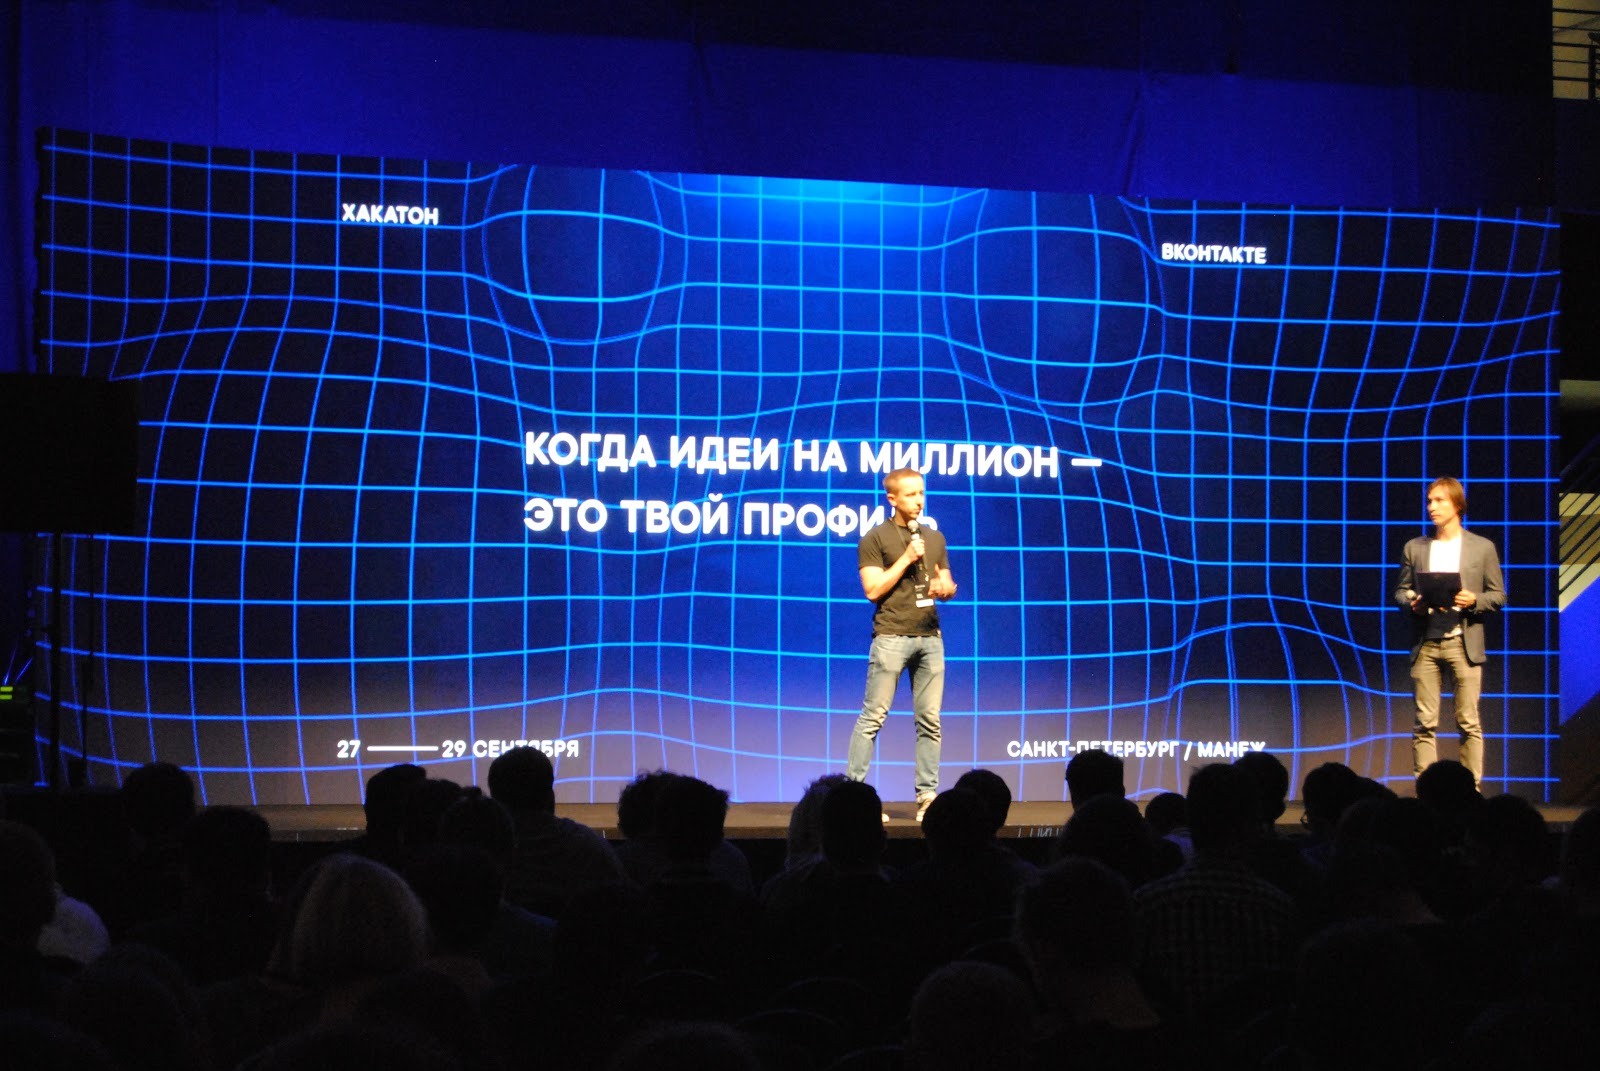 Андрей Рогозов - управляющий директор Вконтакте